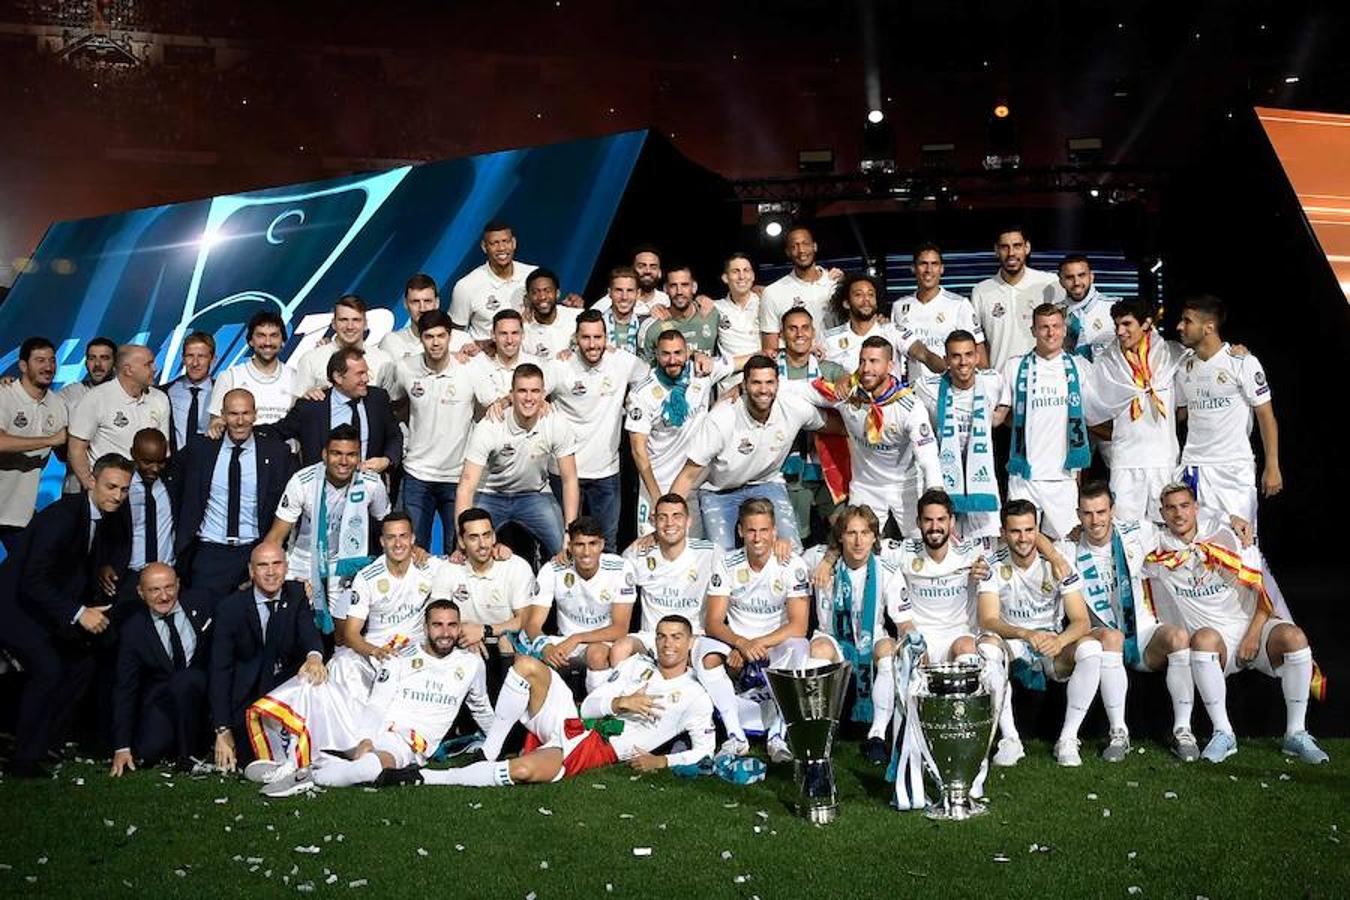 Gran año para el Real Madrid. Por primera vez un mismo equipo y en el mismo año obtiene la Championsde fútbol y la Euroliga de baloncesto. 